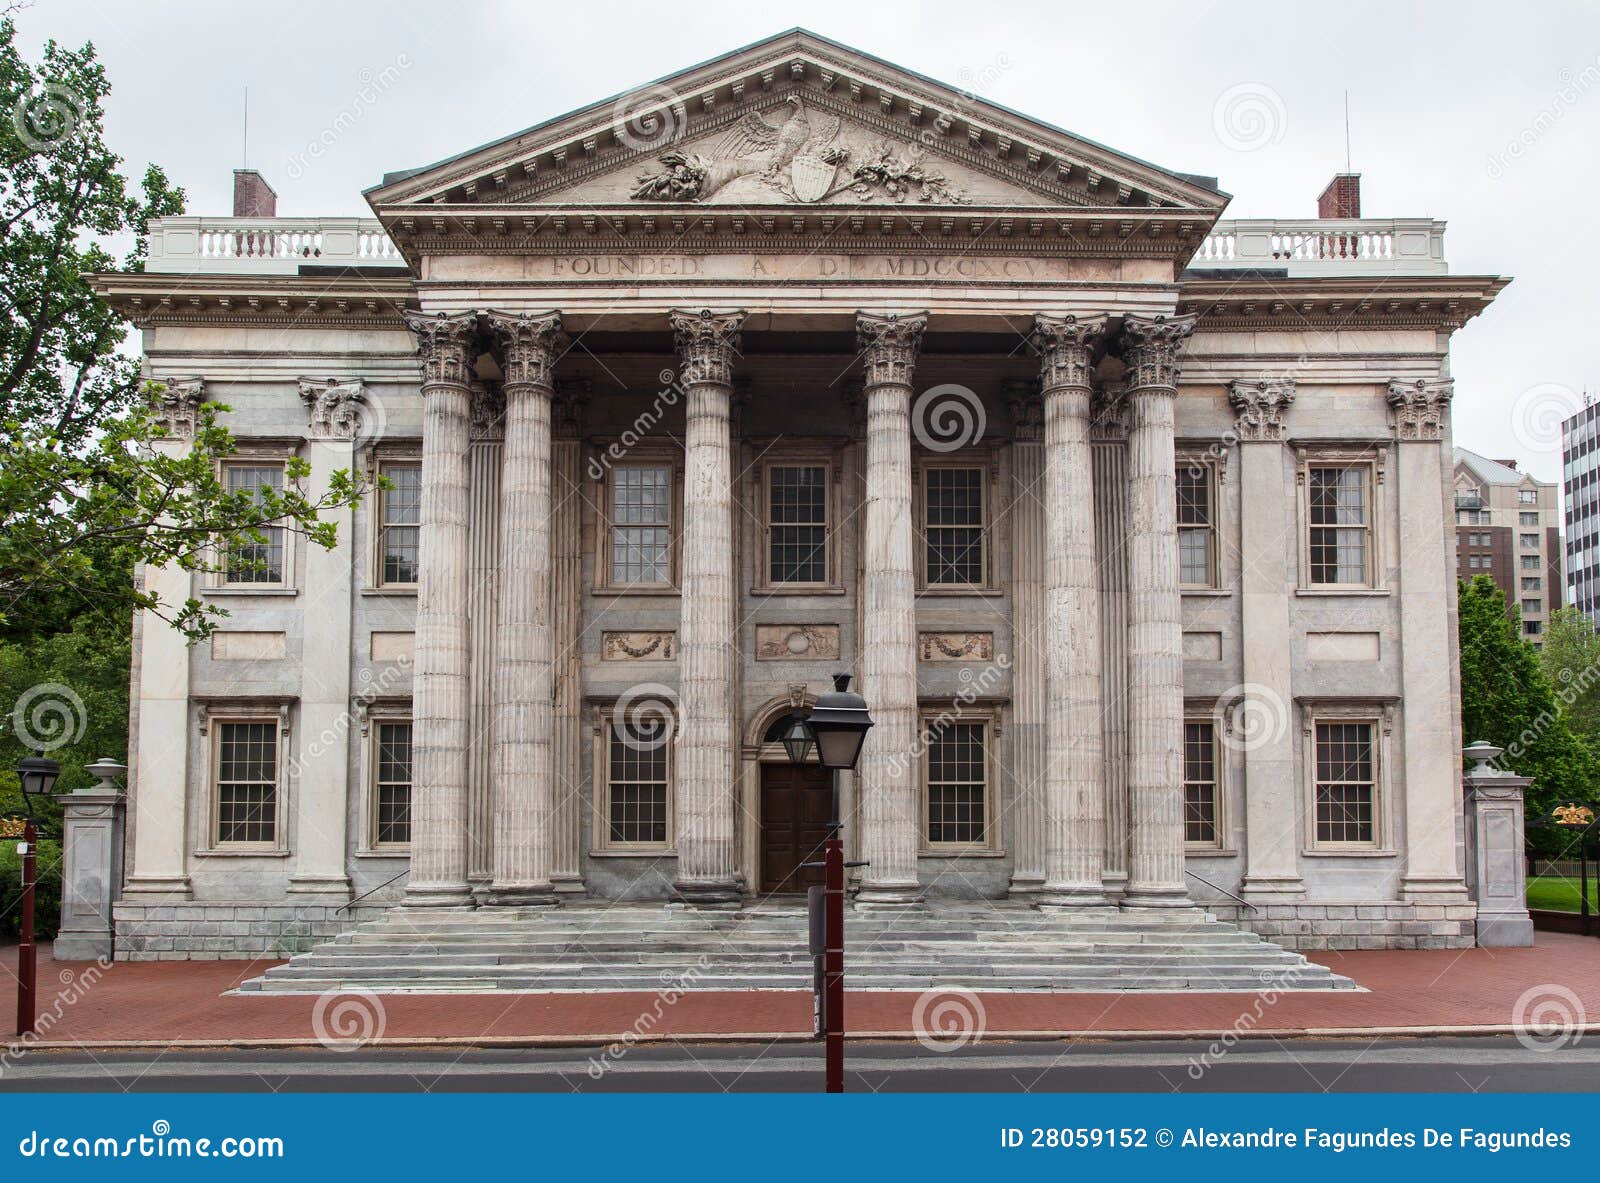 A fachada do primeiro banco dos Estados Unidos com suas colunas do corinthian, Philadelphfia, Pensilv?nia, Estados Unidos.